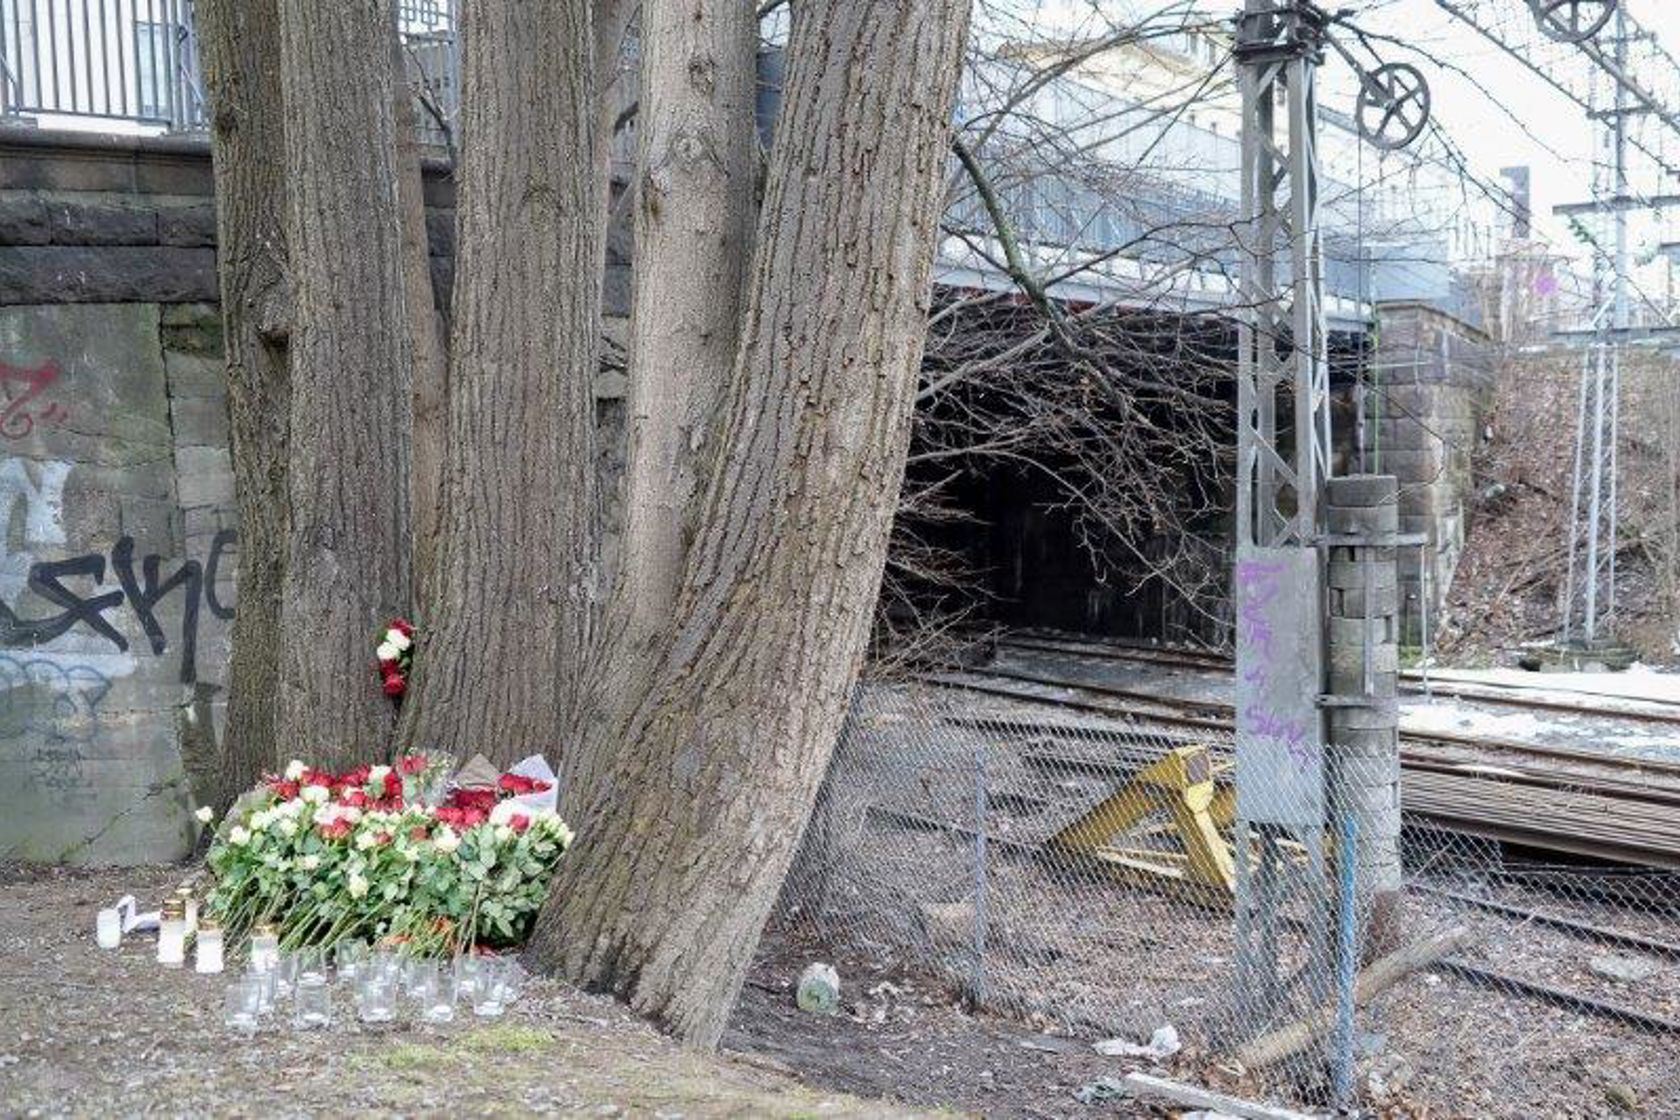 Et minnested med blomster og lys inntil et tre, foran et inngjerdet jernbaneområde